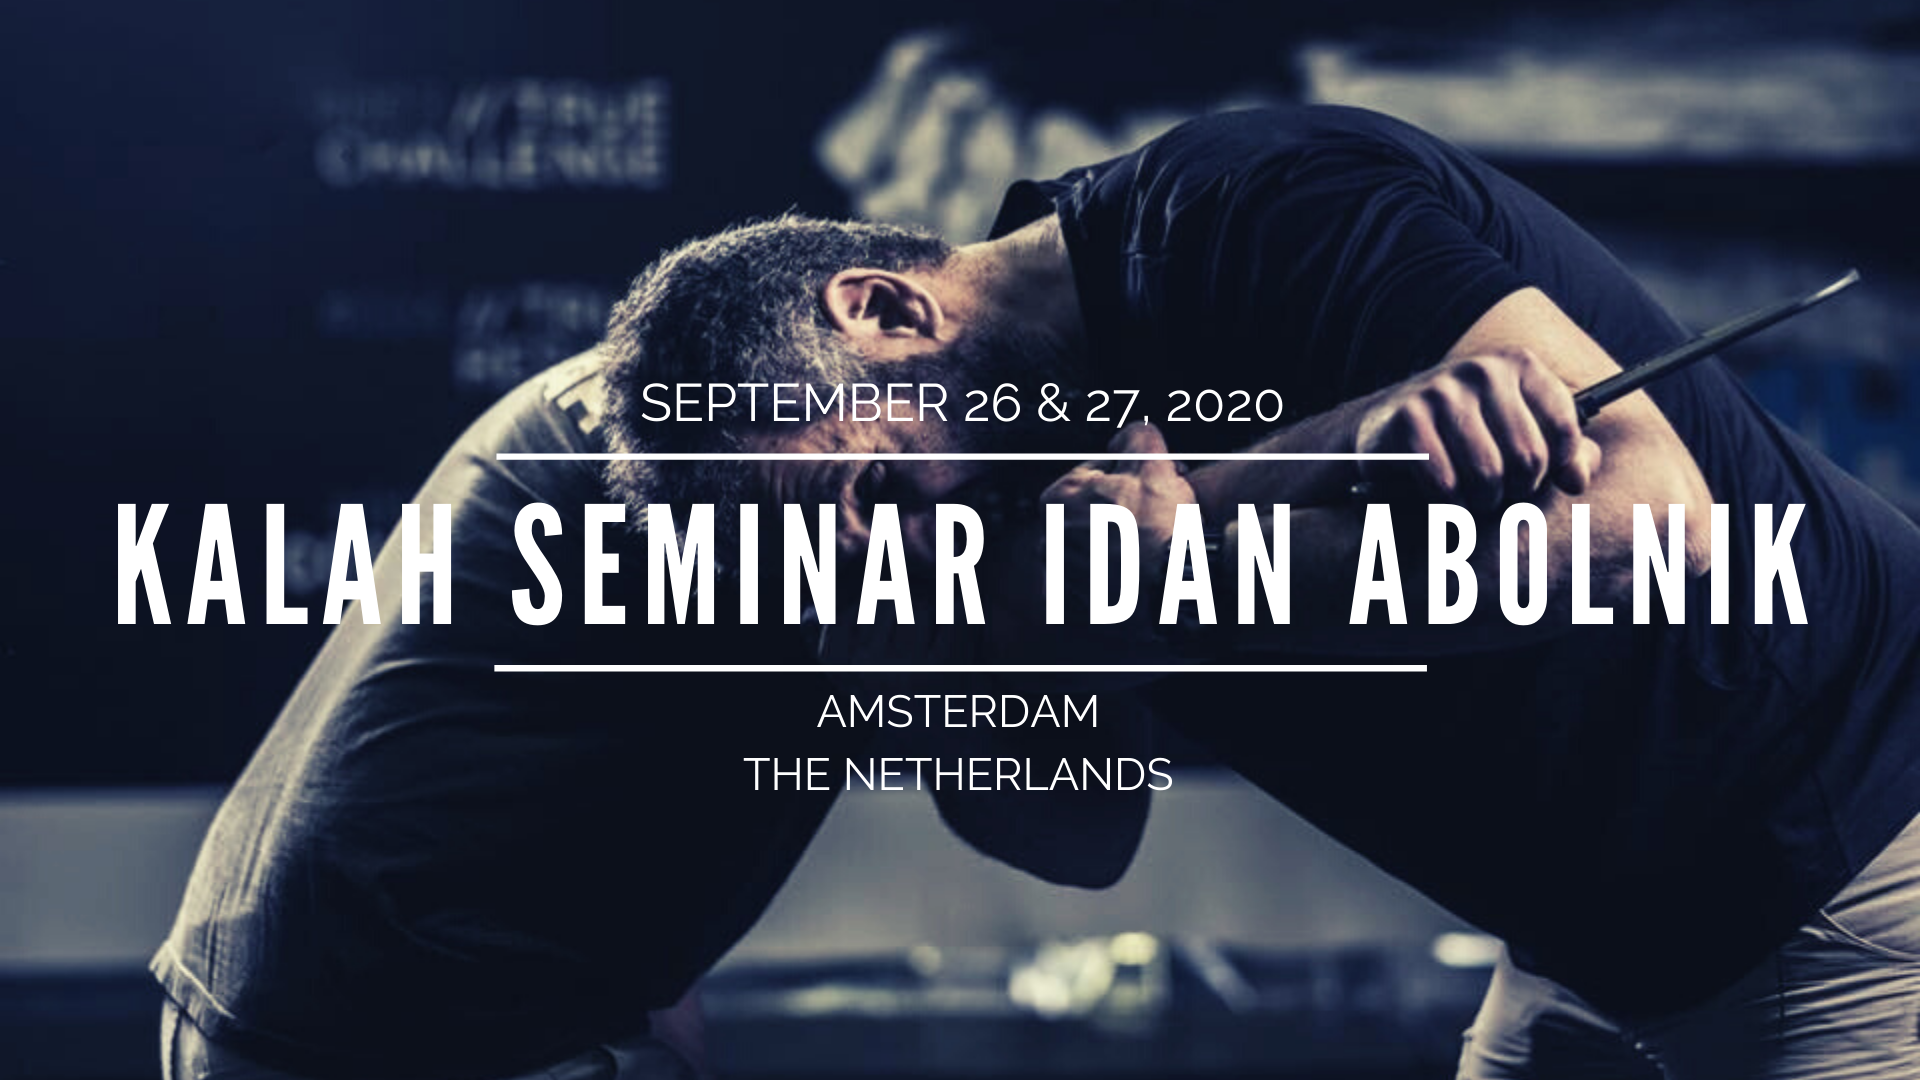 Kalah seminar Idan Abolnik Amsterdam 26 en 27 september 2020